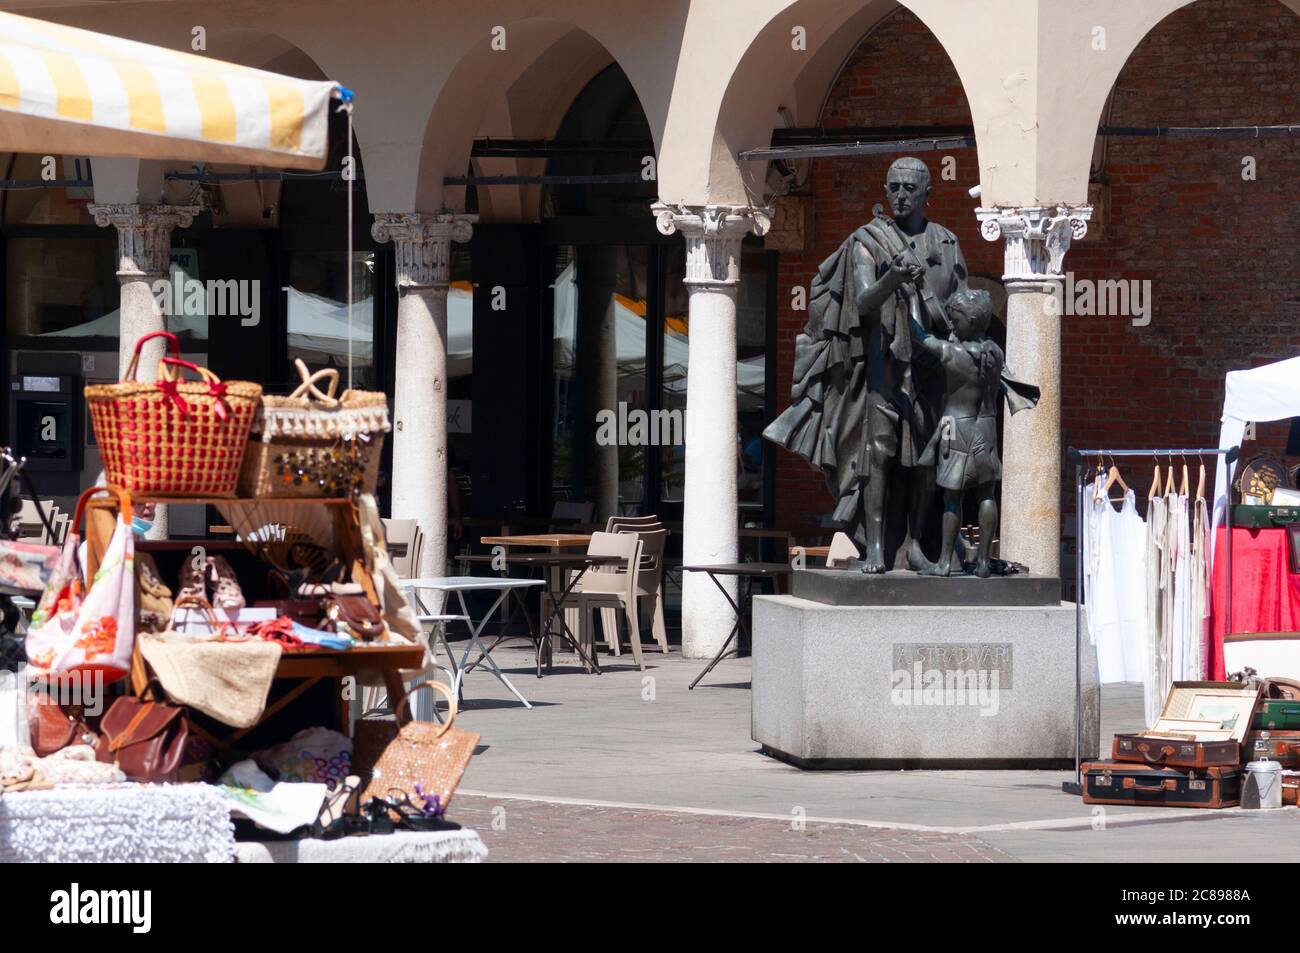 Italie, Lombardie, Cremona, Piazza Stradivari Square, Antonio Stradivari Violin Maker Monument, marché aux puces Banque D'Images